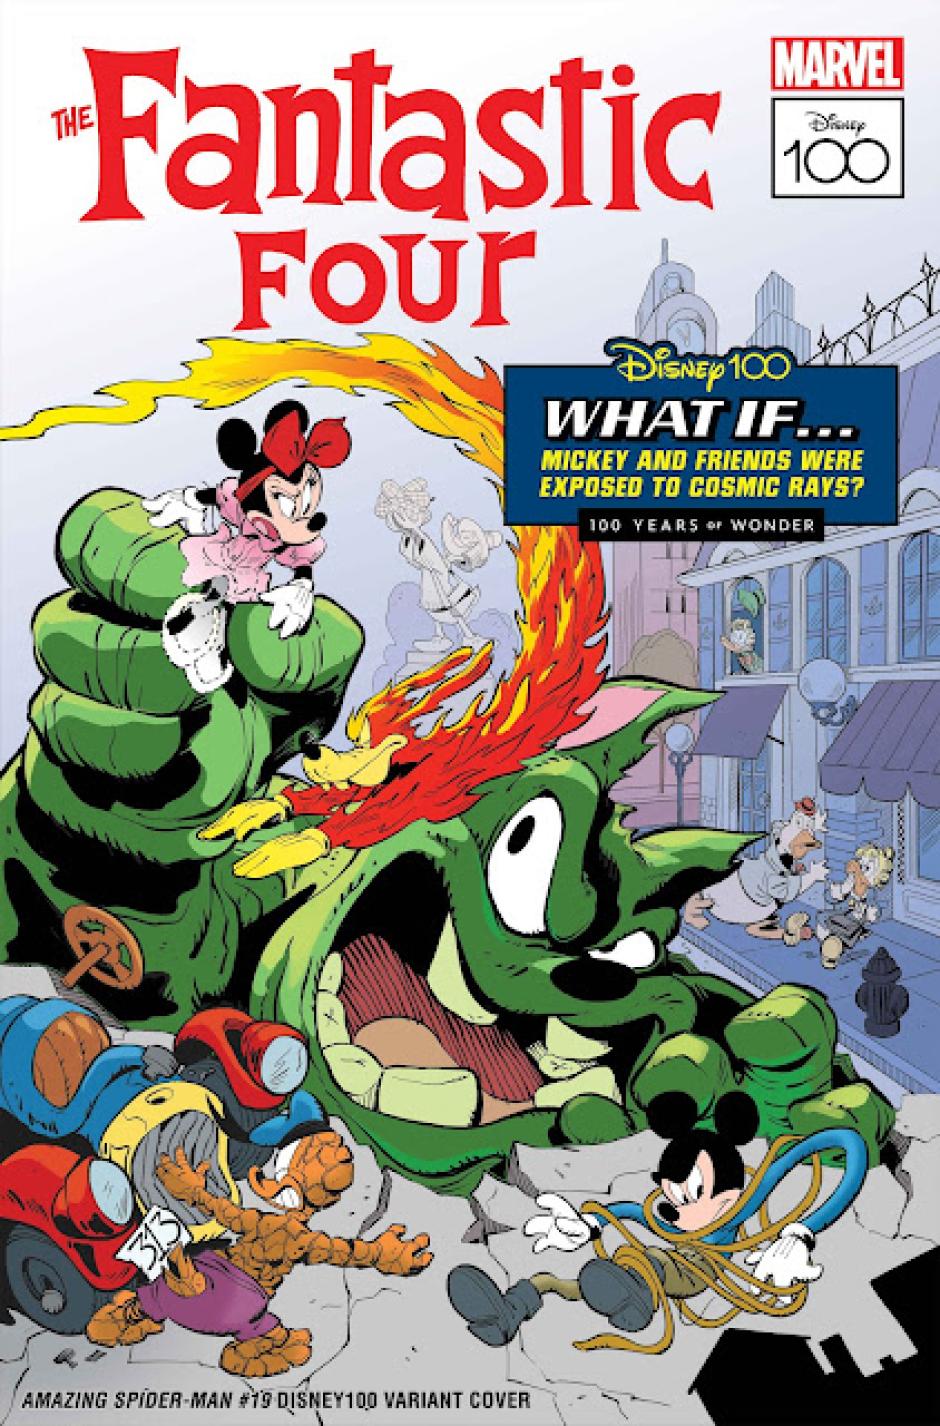 La portada con los personajes clásicos de Disney caracterizados como los Cuatro Fantásticos de Marvel